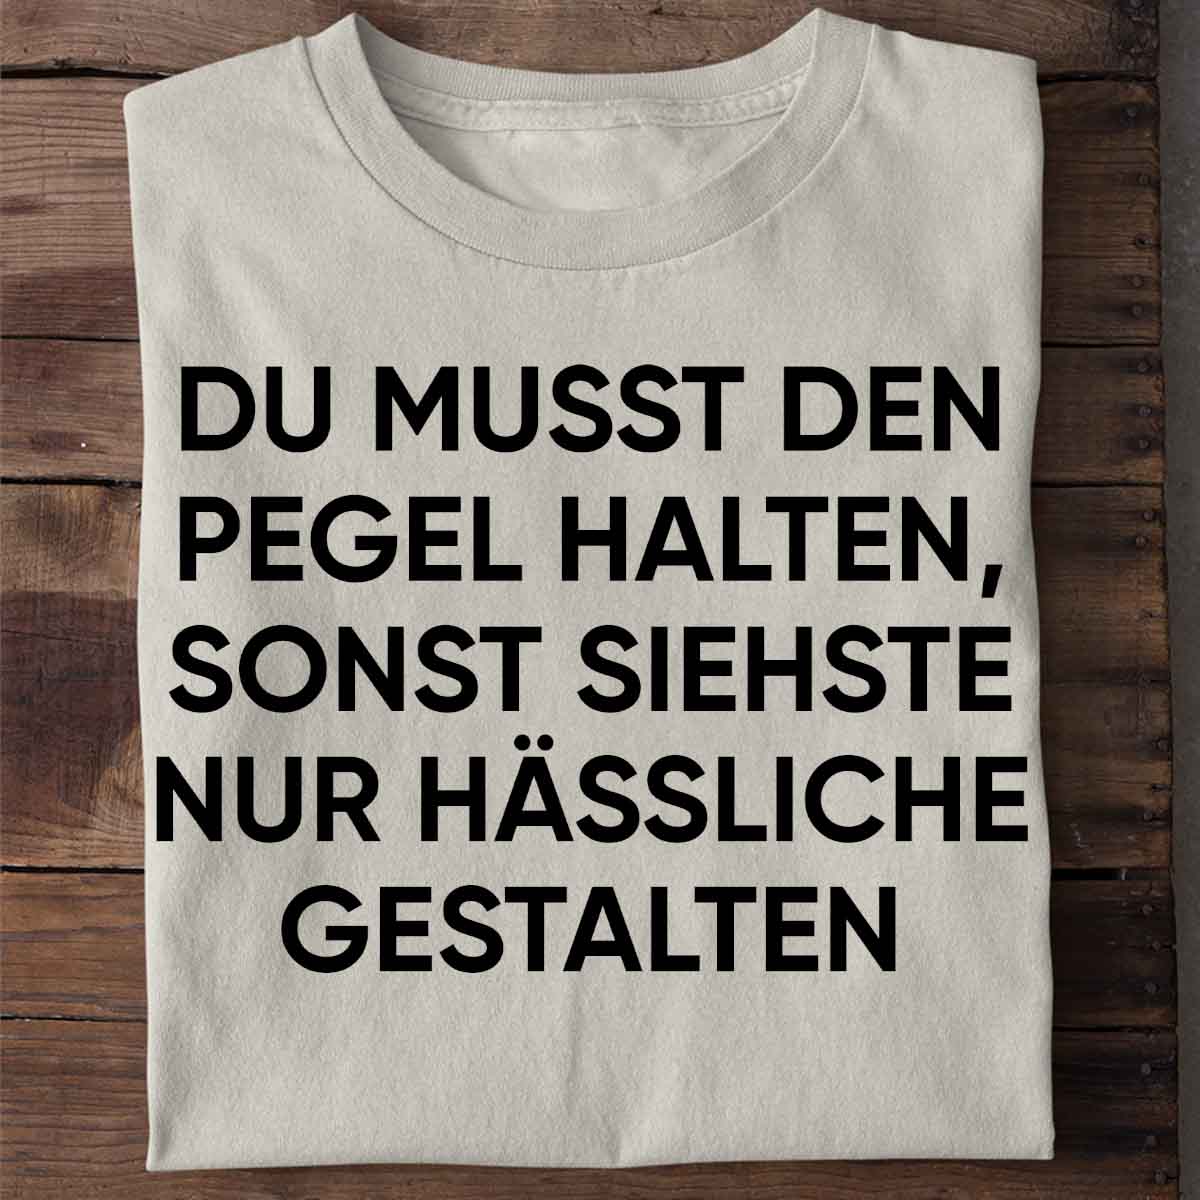 Hässliche Gestalten - Shirt Unisex